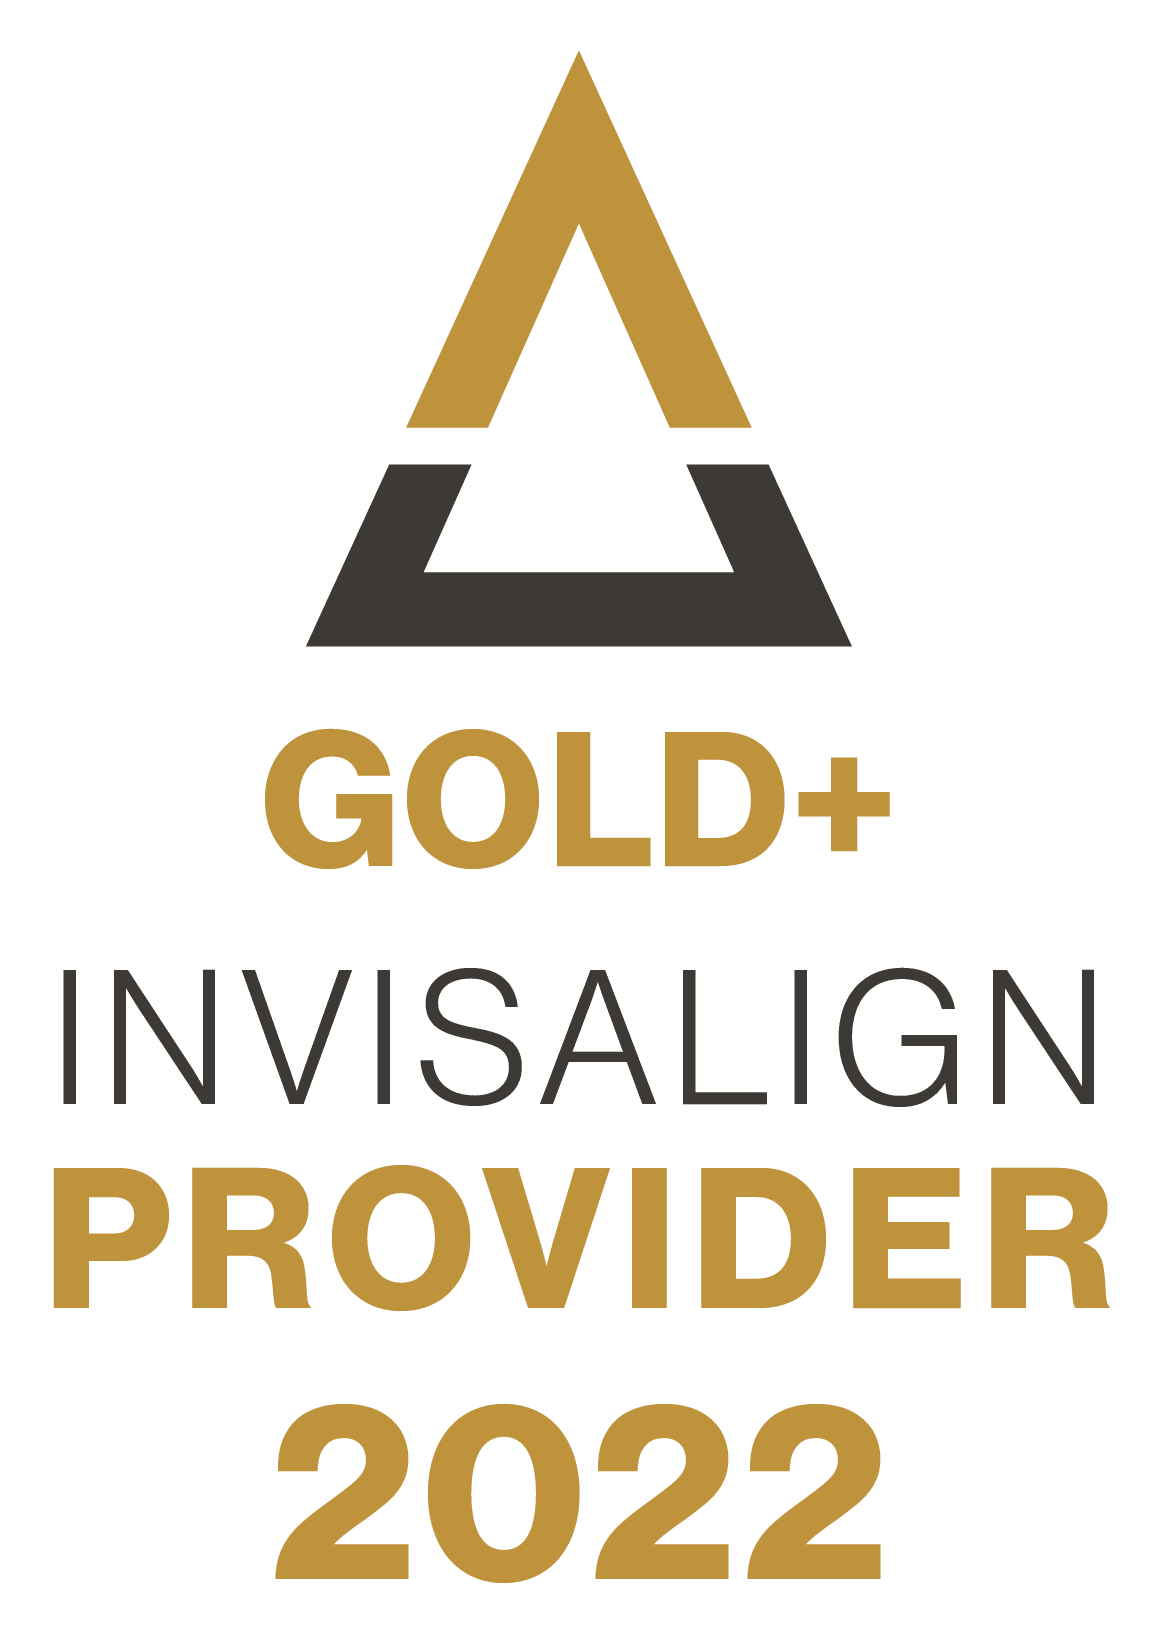 Gold Invisalign Provider